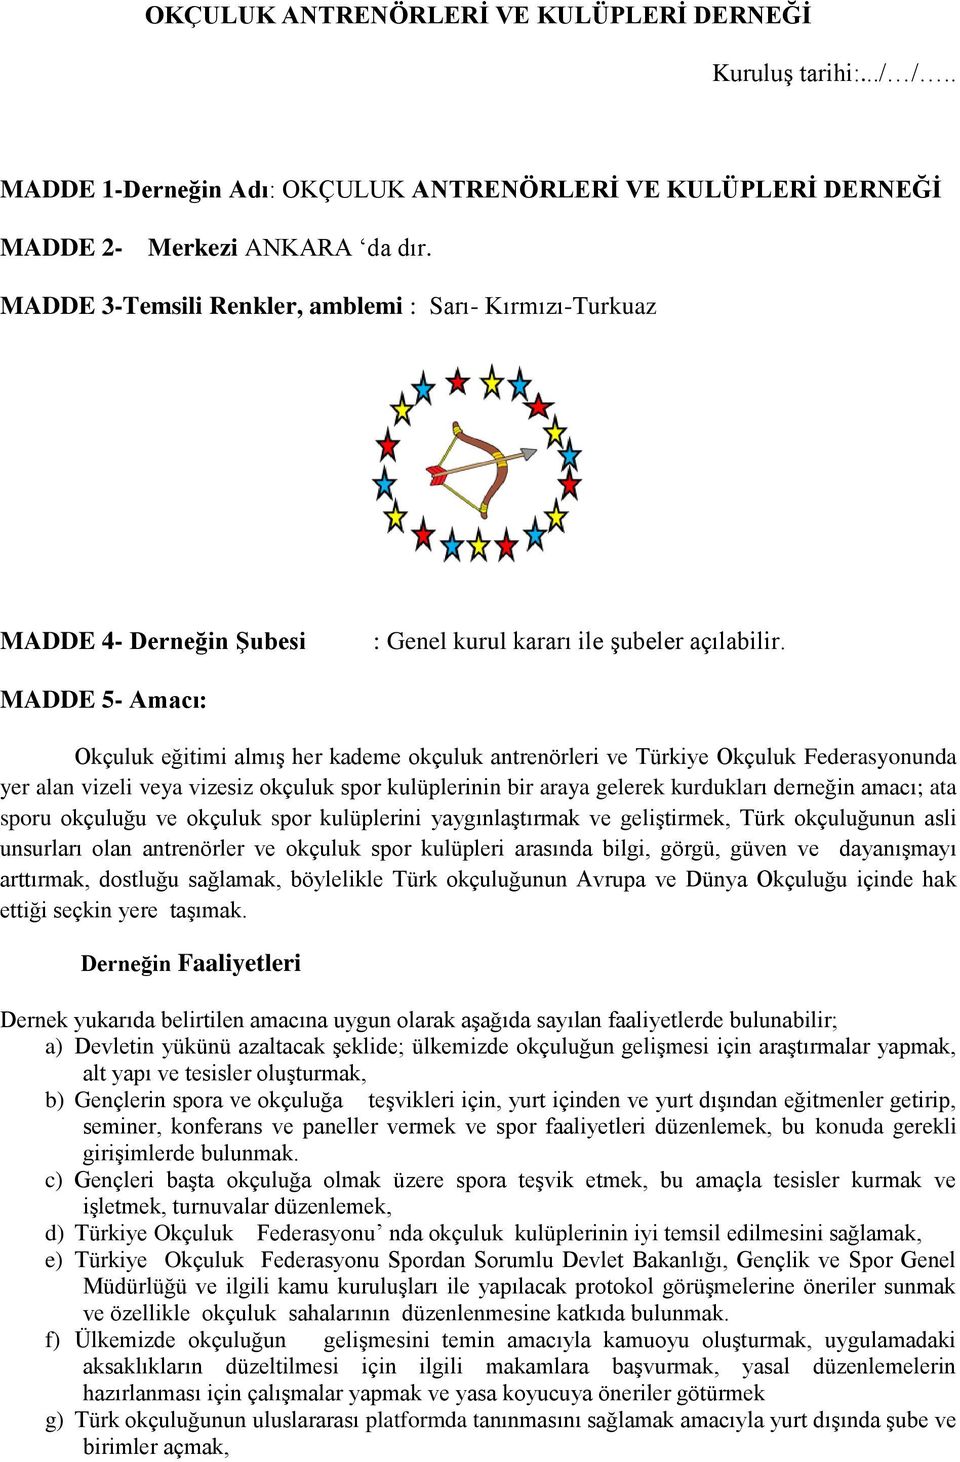 MADDE 5- Amacı: Okçuluk eğitimi almış her kademe okçuluk antrenörleri ve Türkiye Okçuluk Federasyonunda yer alan vizeli veya vizesiz okçuluk spor kulüplerinin bir araya gelerek kurdukları derneğin